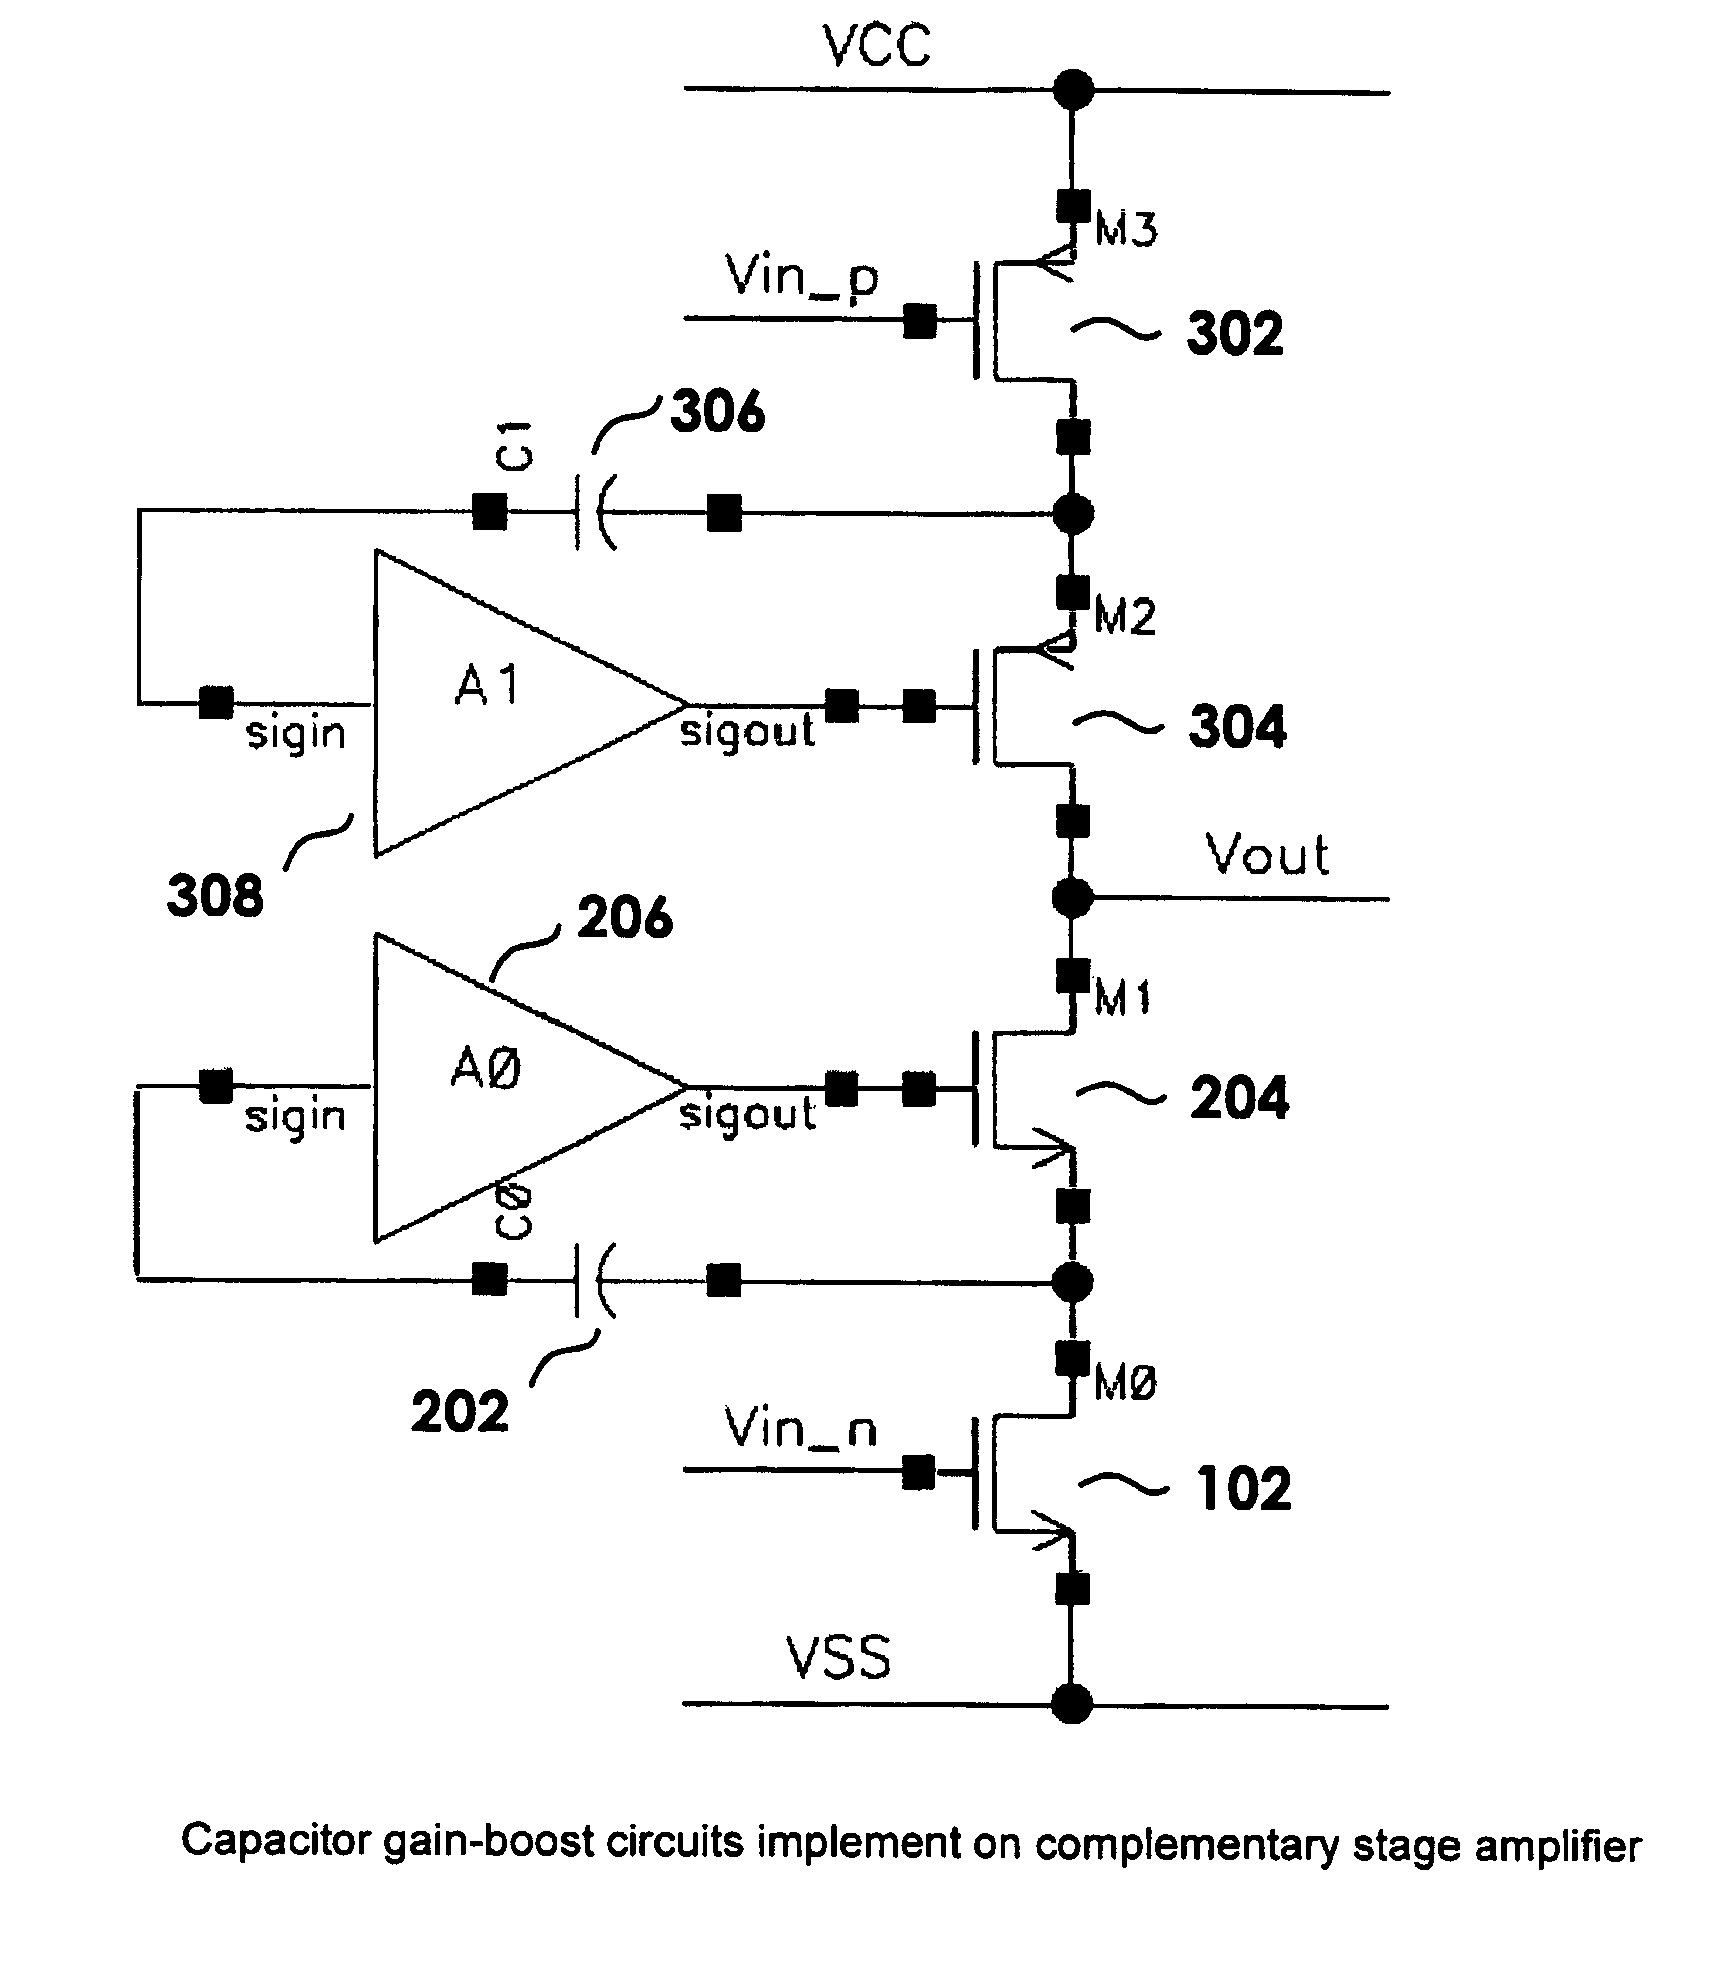 Capacitor gain-boost circuit